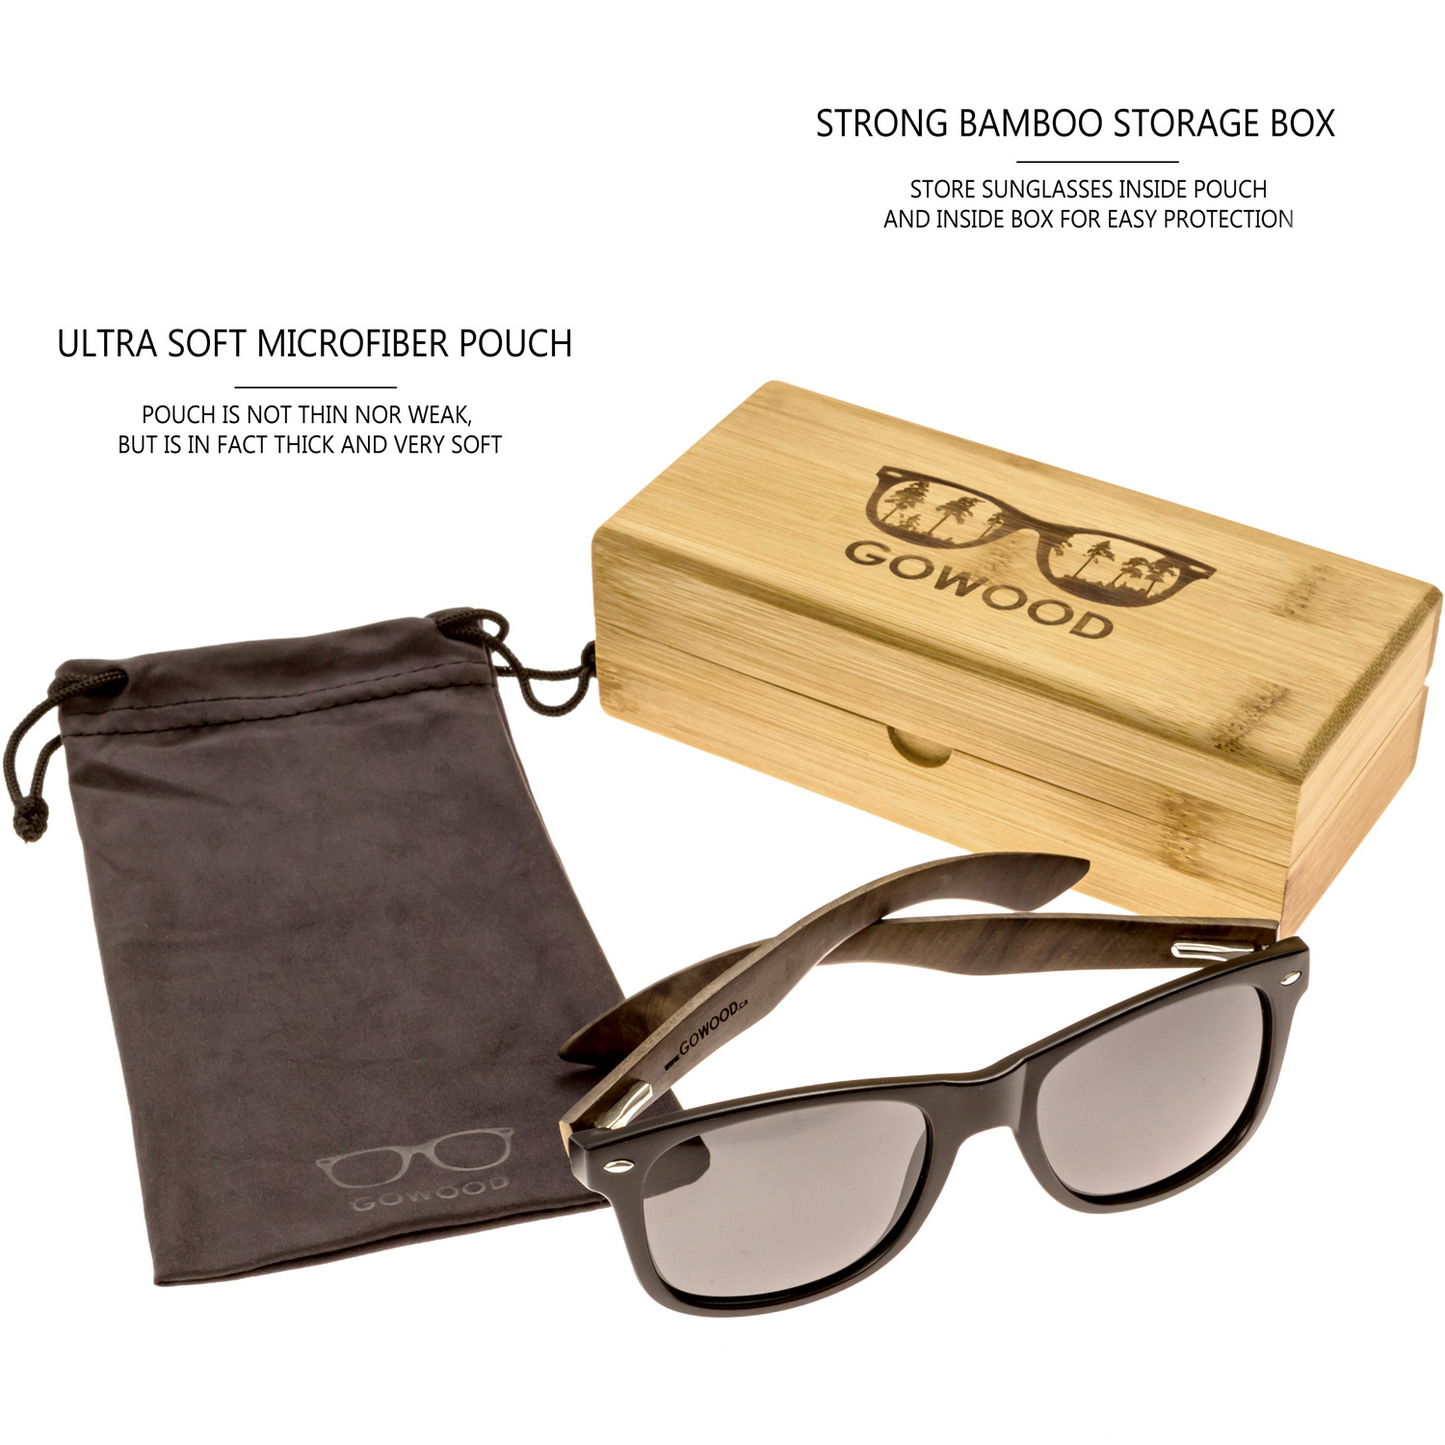 Ebony wood classic style sunglasses with black polarized lenses